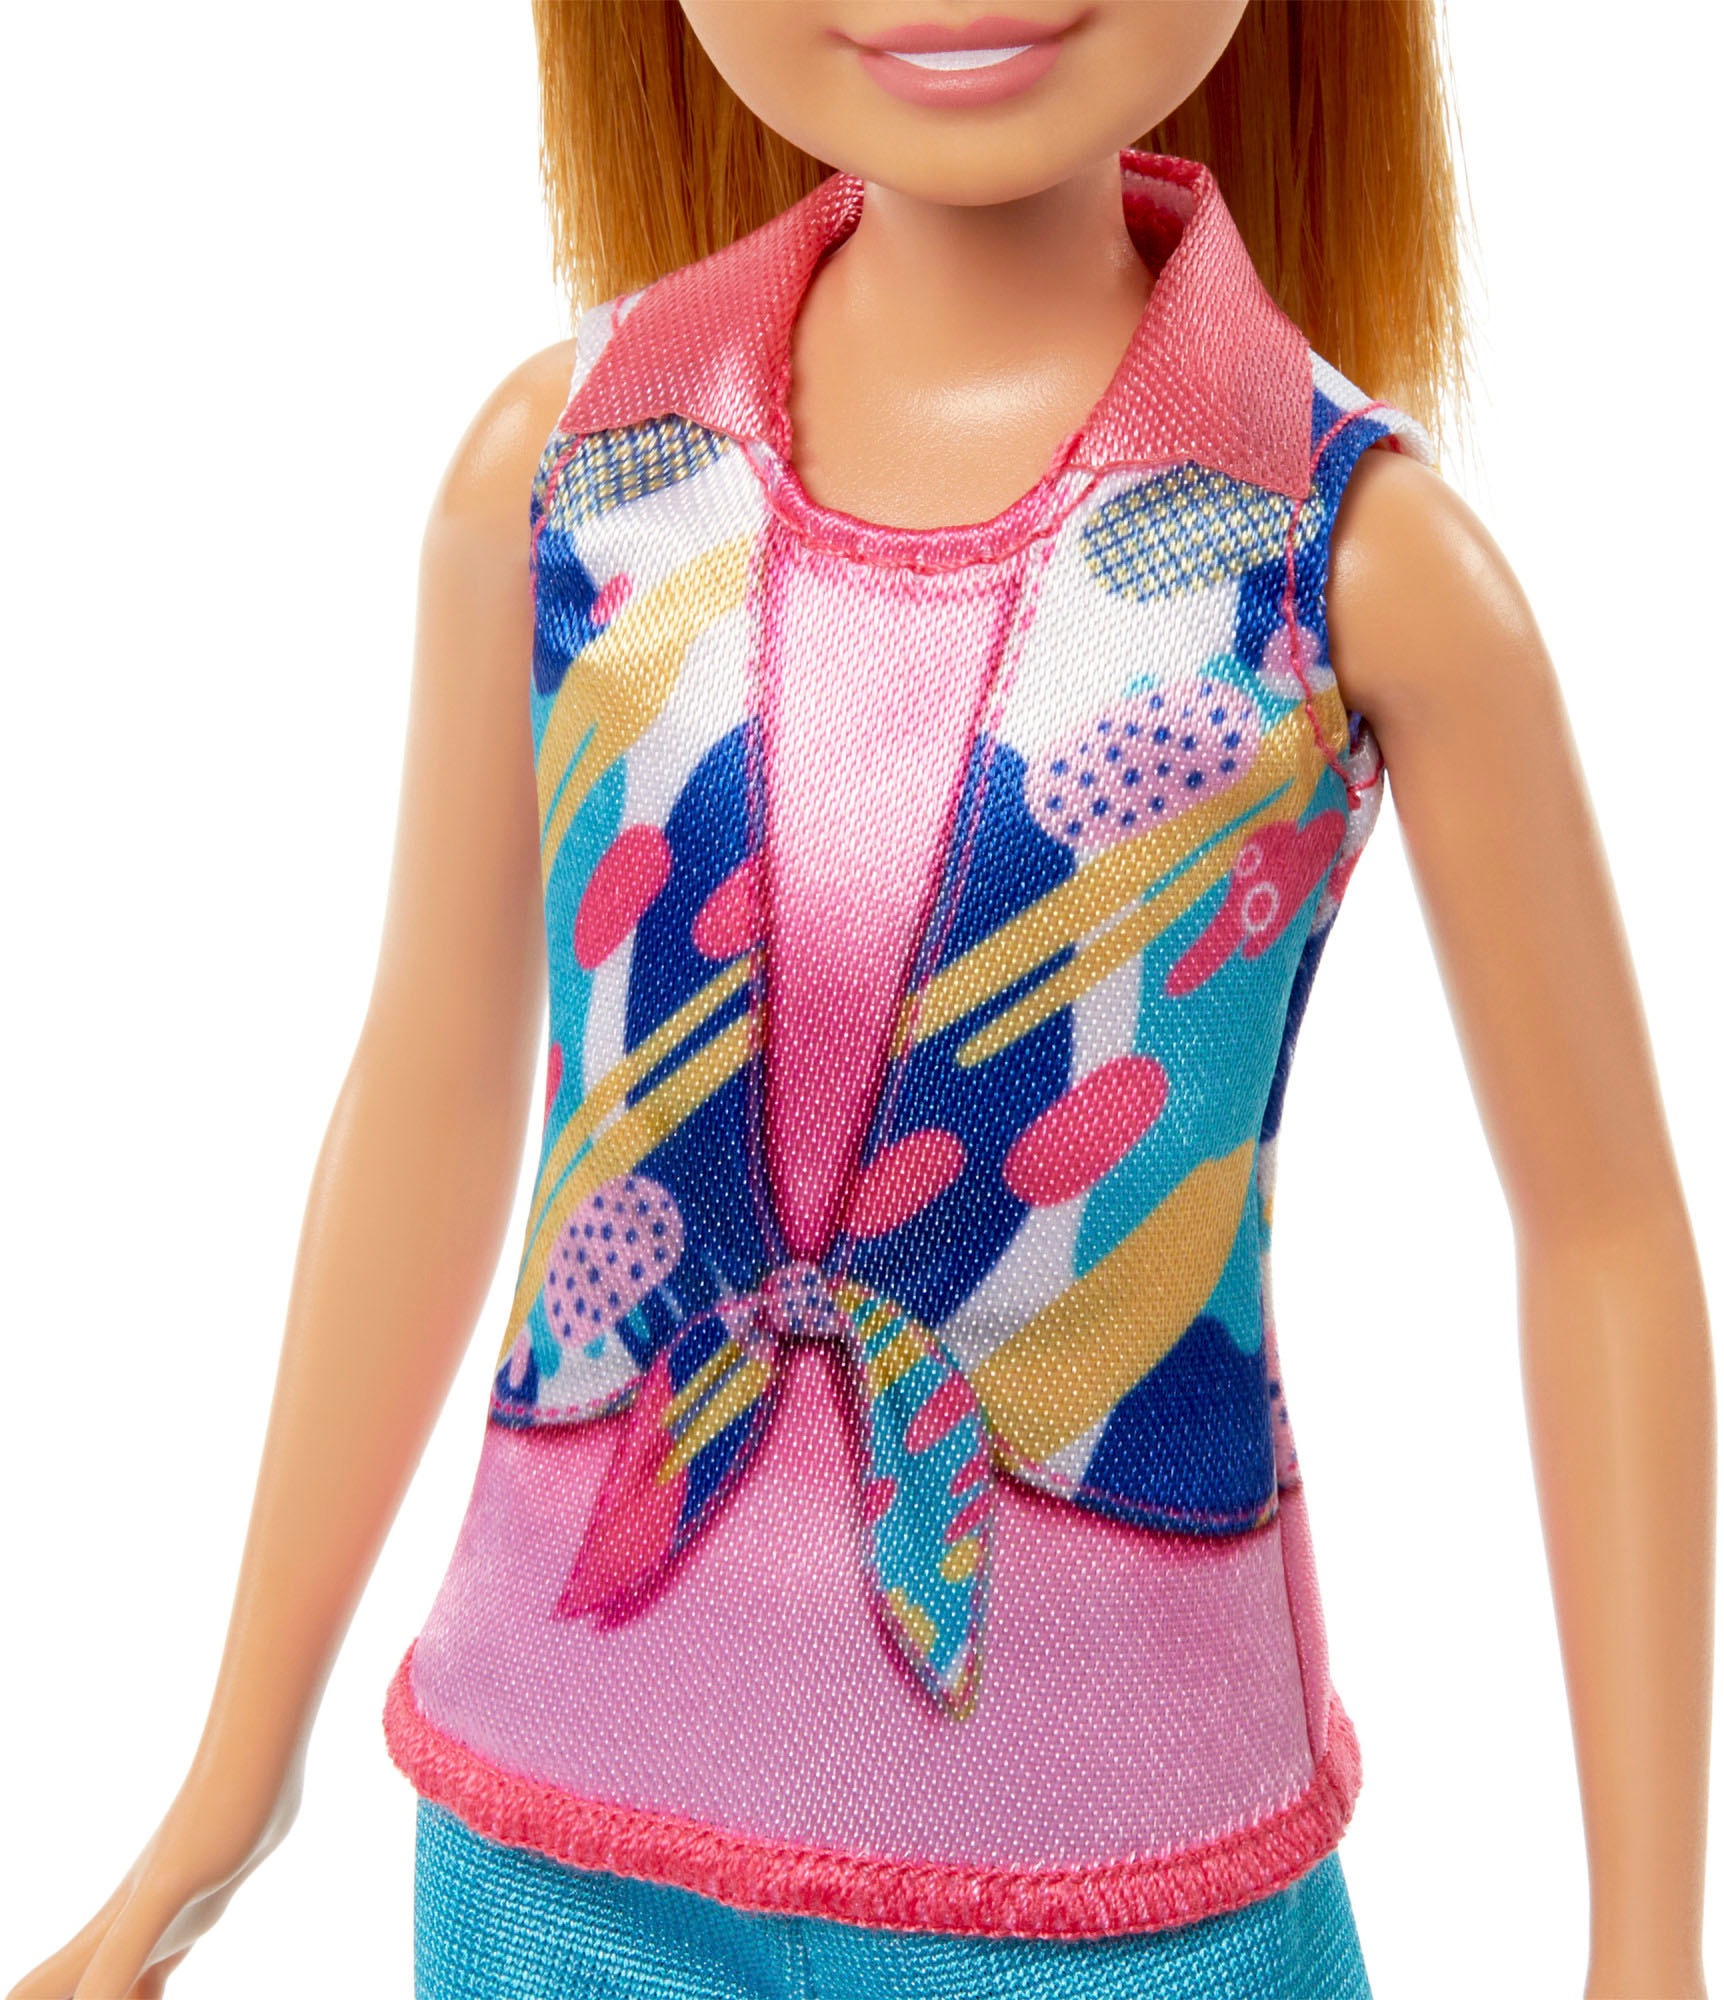 Barbie Anziehpuppe »Stacie & Barbie«, (Set, 2 tlg.)